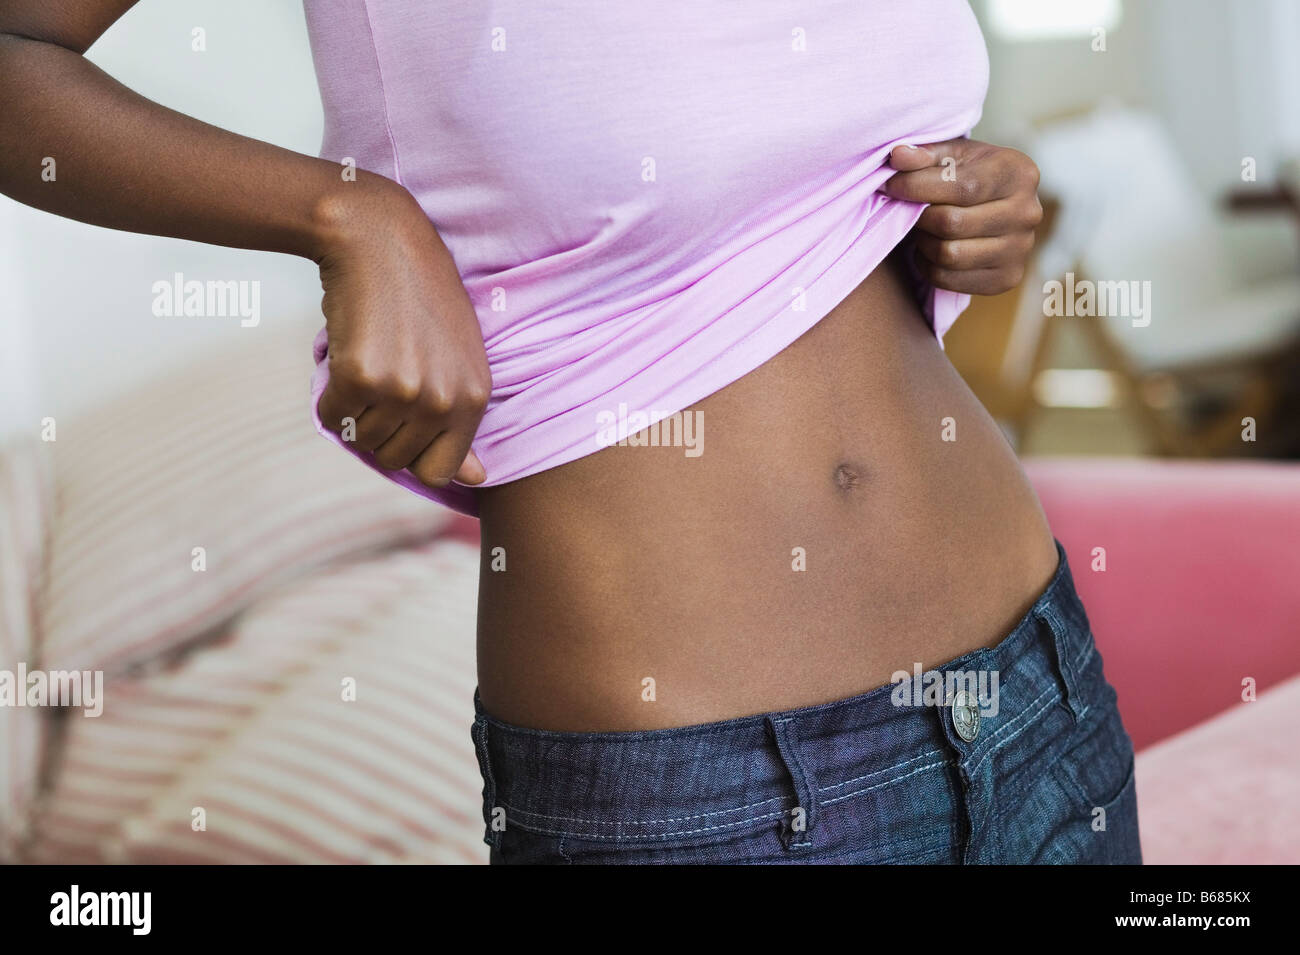 https://c8.alamy.com/comp/B685KX/woman-lifting-shirt-to-show-stomach-B685KX.jpg